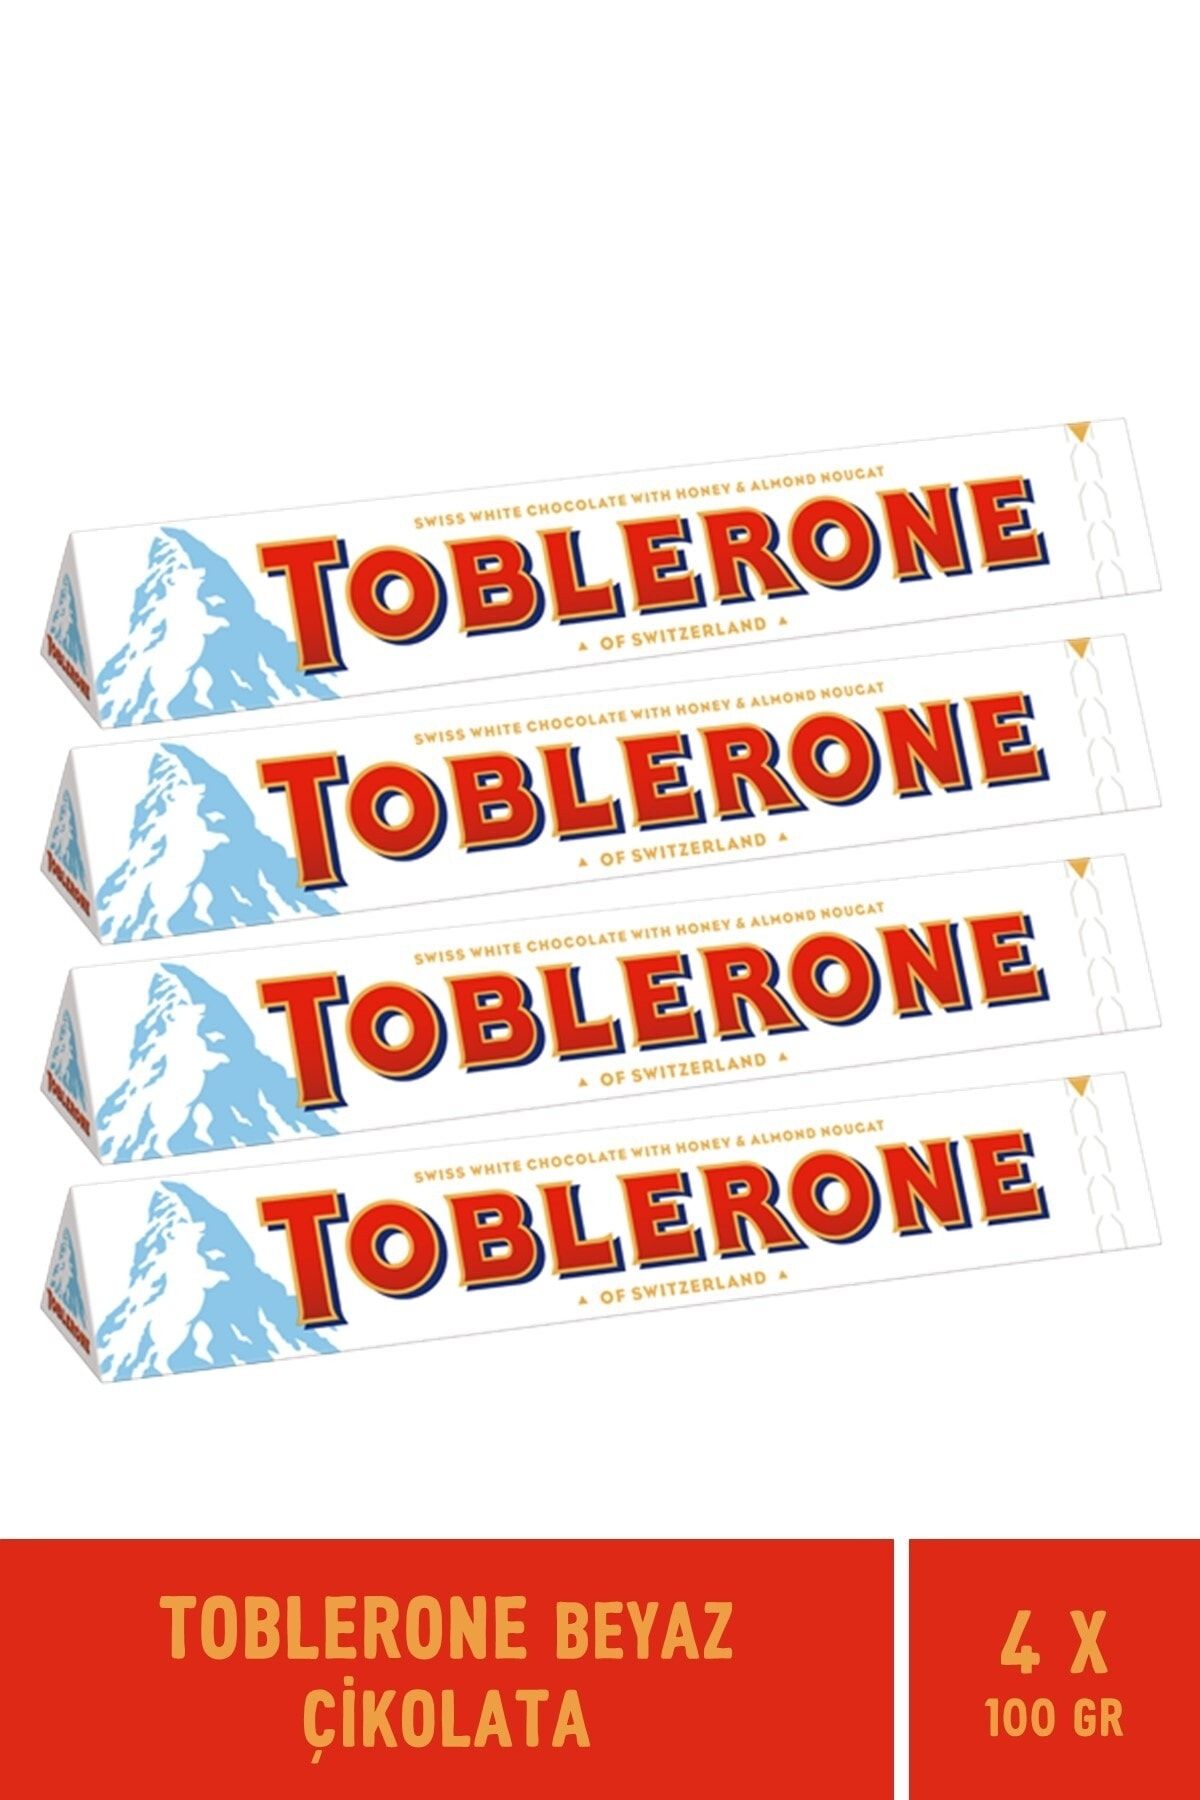 Toblerone Beyaz Çikolata 100 gr - 4 Adet